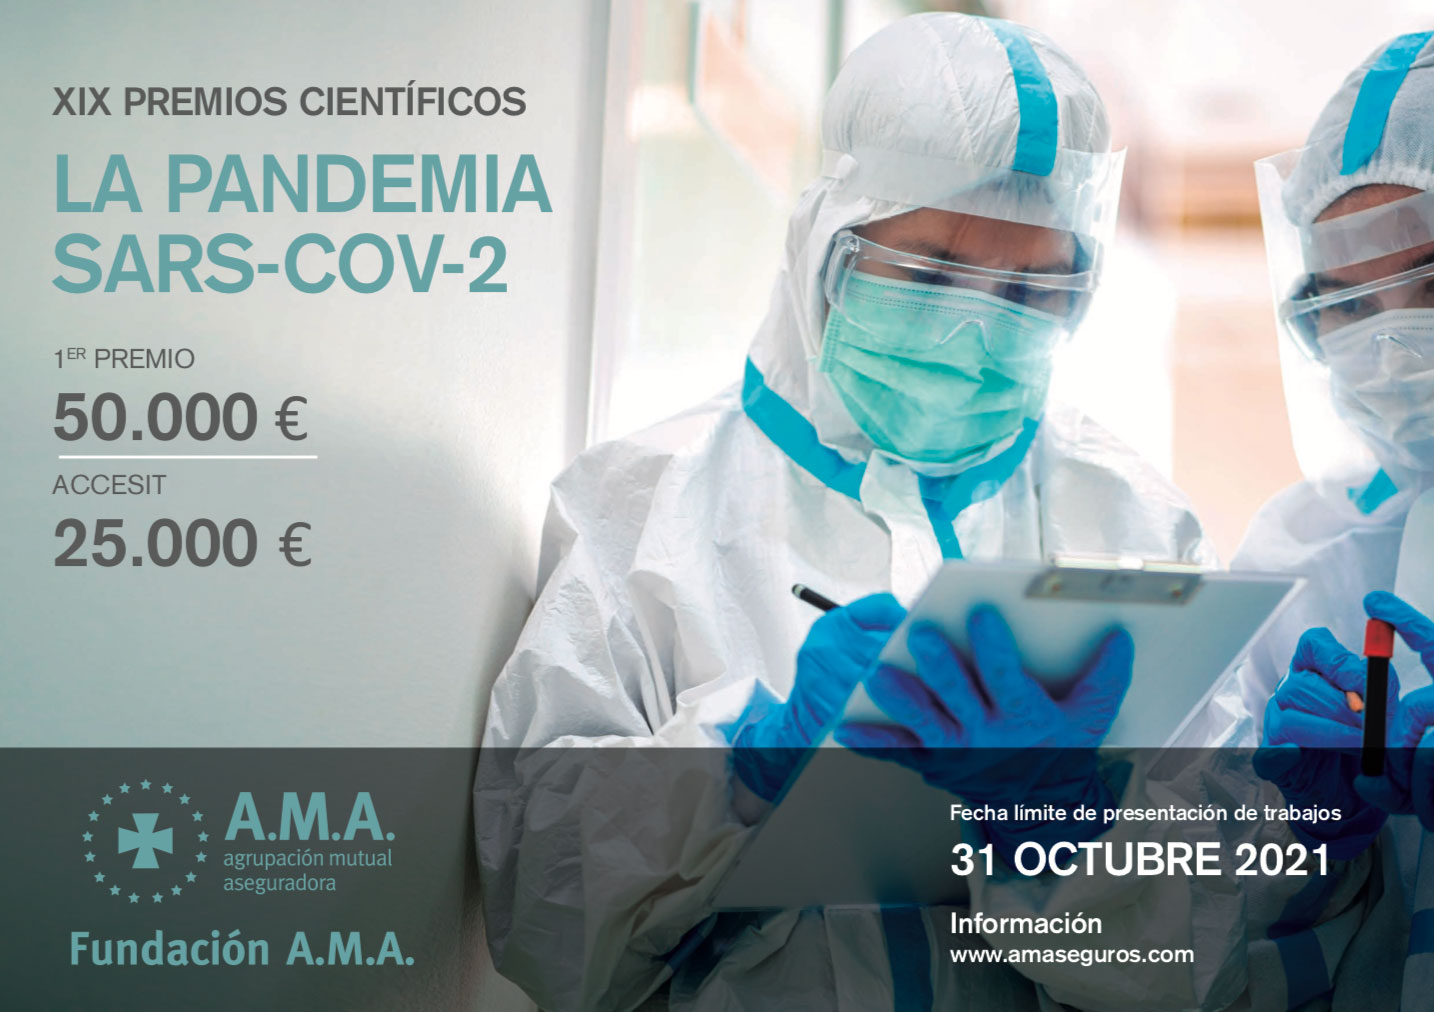 Fundación A.M.A. 9/06/21: XIX PREMIOS CIENTÍFICOS LA PANDEMIA SARS-COV-2